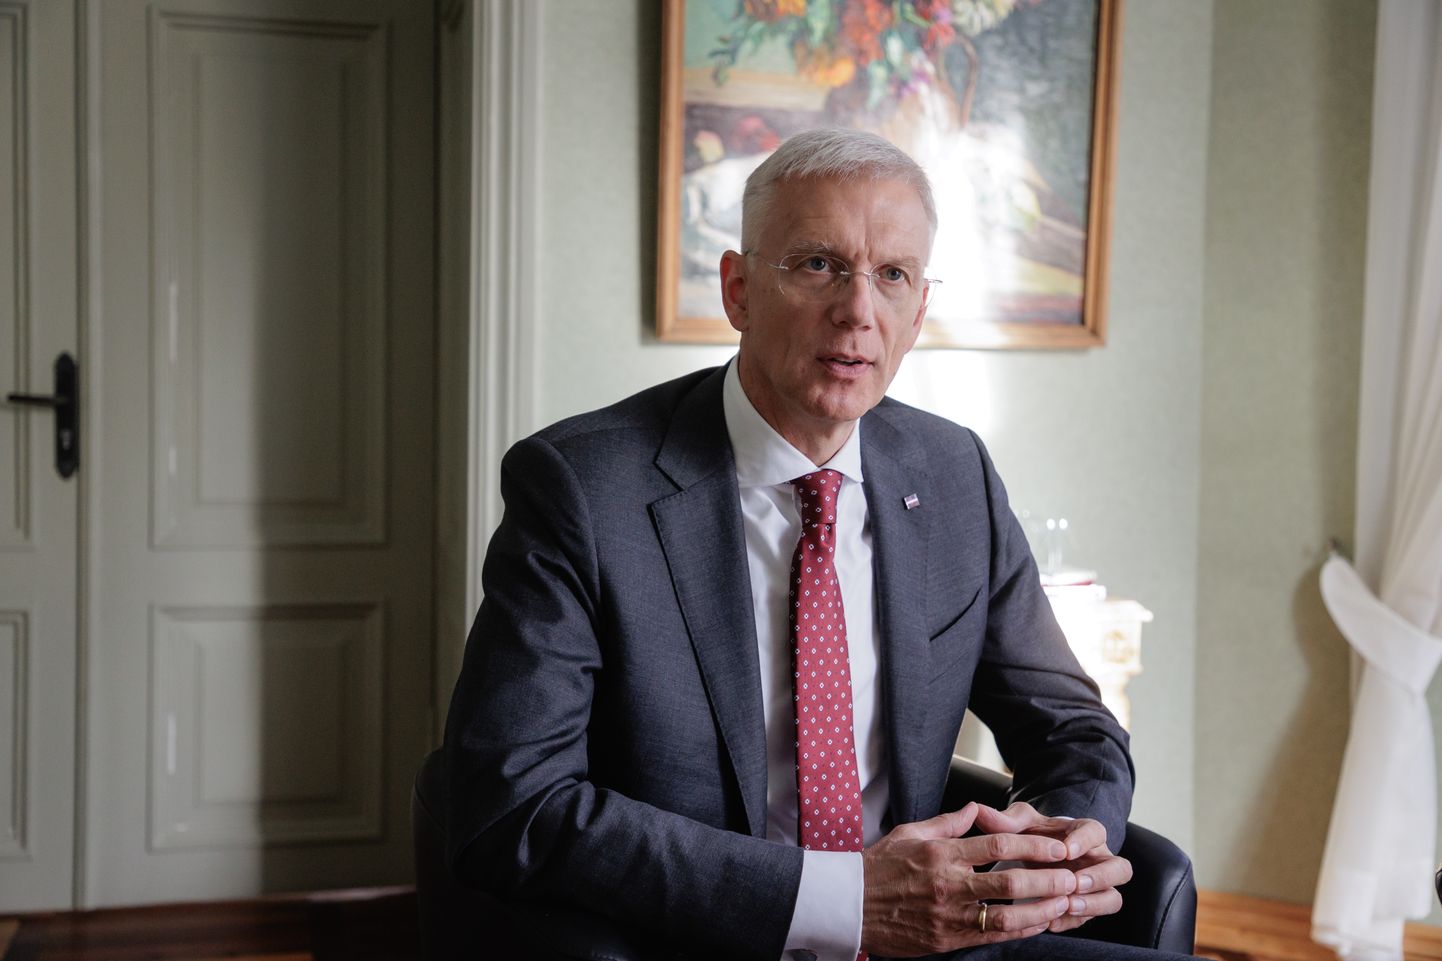 Läti välisminister Krišjānis Kariņš tegi 13. oktoobril oma esimese välisvisiidi uues ametis just Eestisse. Kariņš võttis välisministri portfelli enda kätte 15. septembril. Enne seda oli ta Läti peaminister.